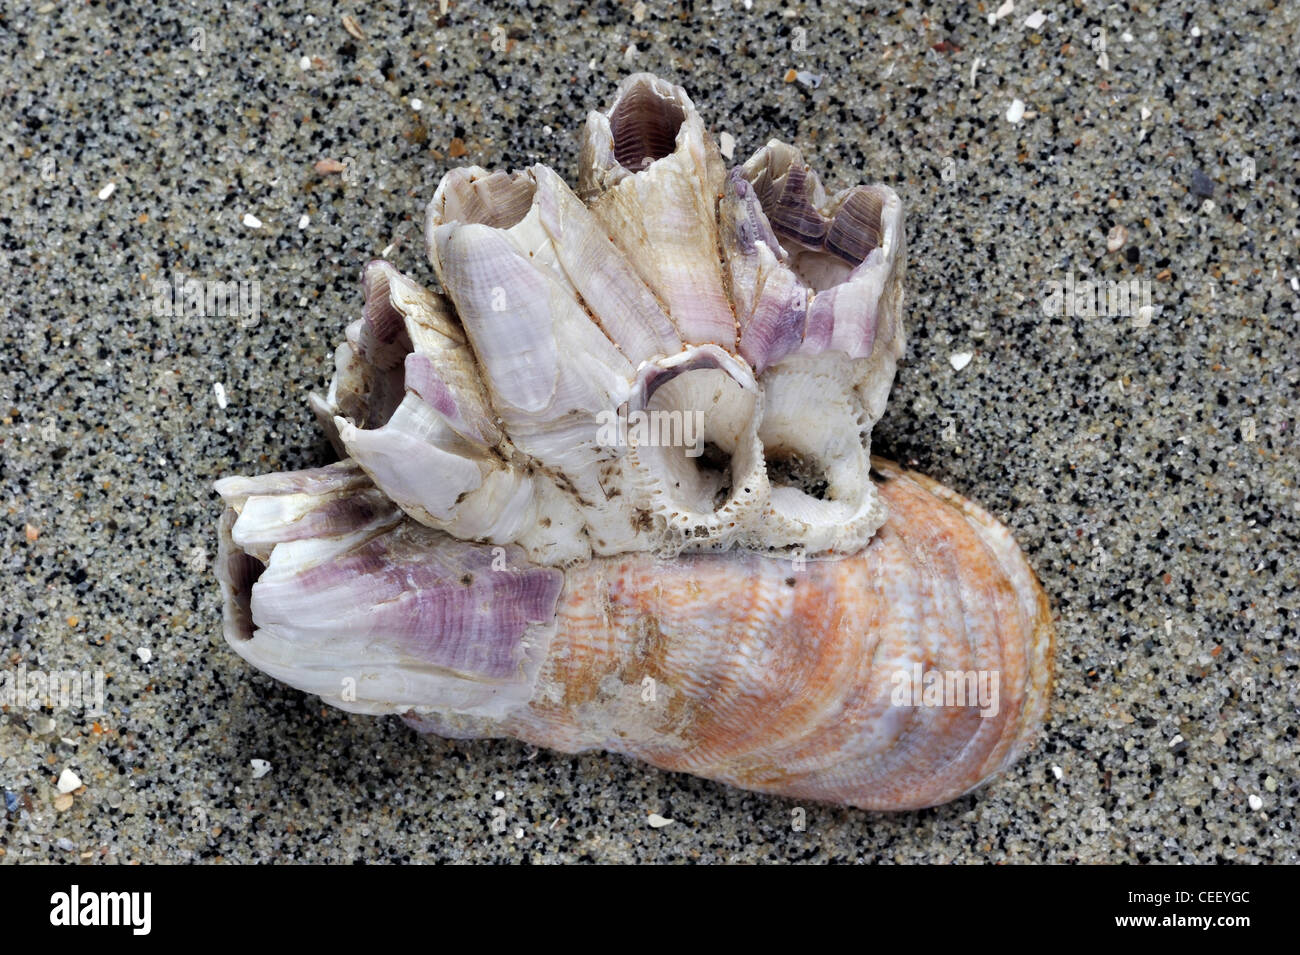 American slipper limpet (Crepidula fornicata) shell sulla spiaggia con Acorn barnacles (Megabalanus tintinnabulum) crescente su di esso Foto Stock